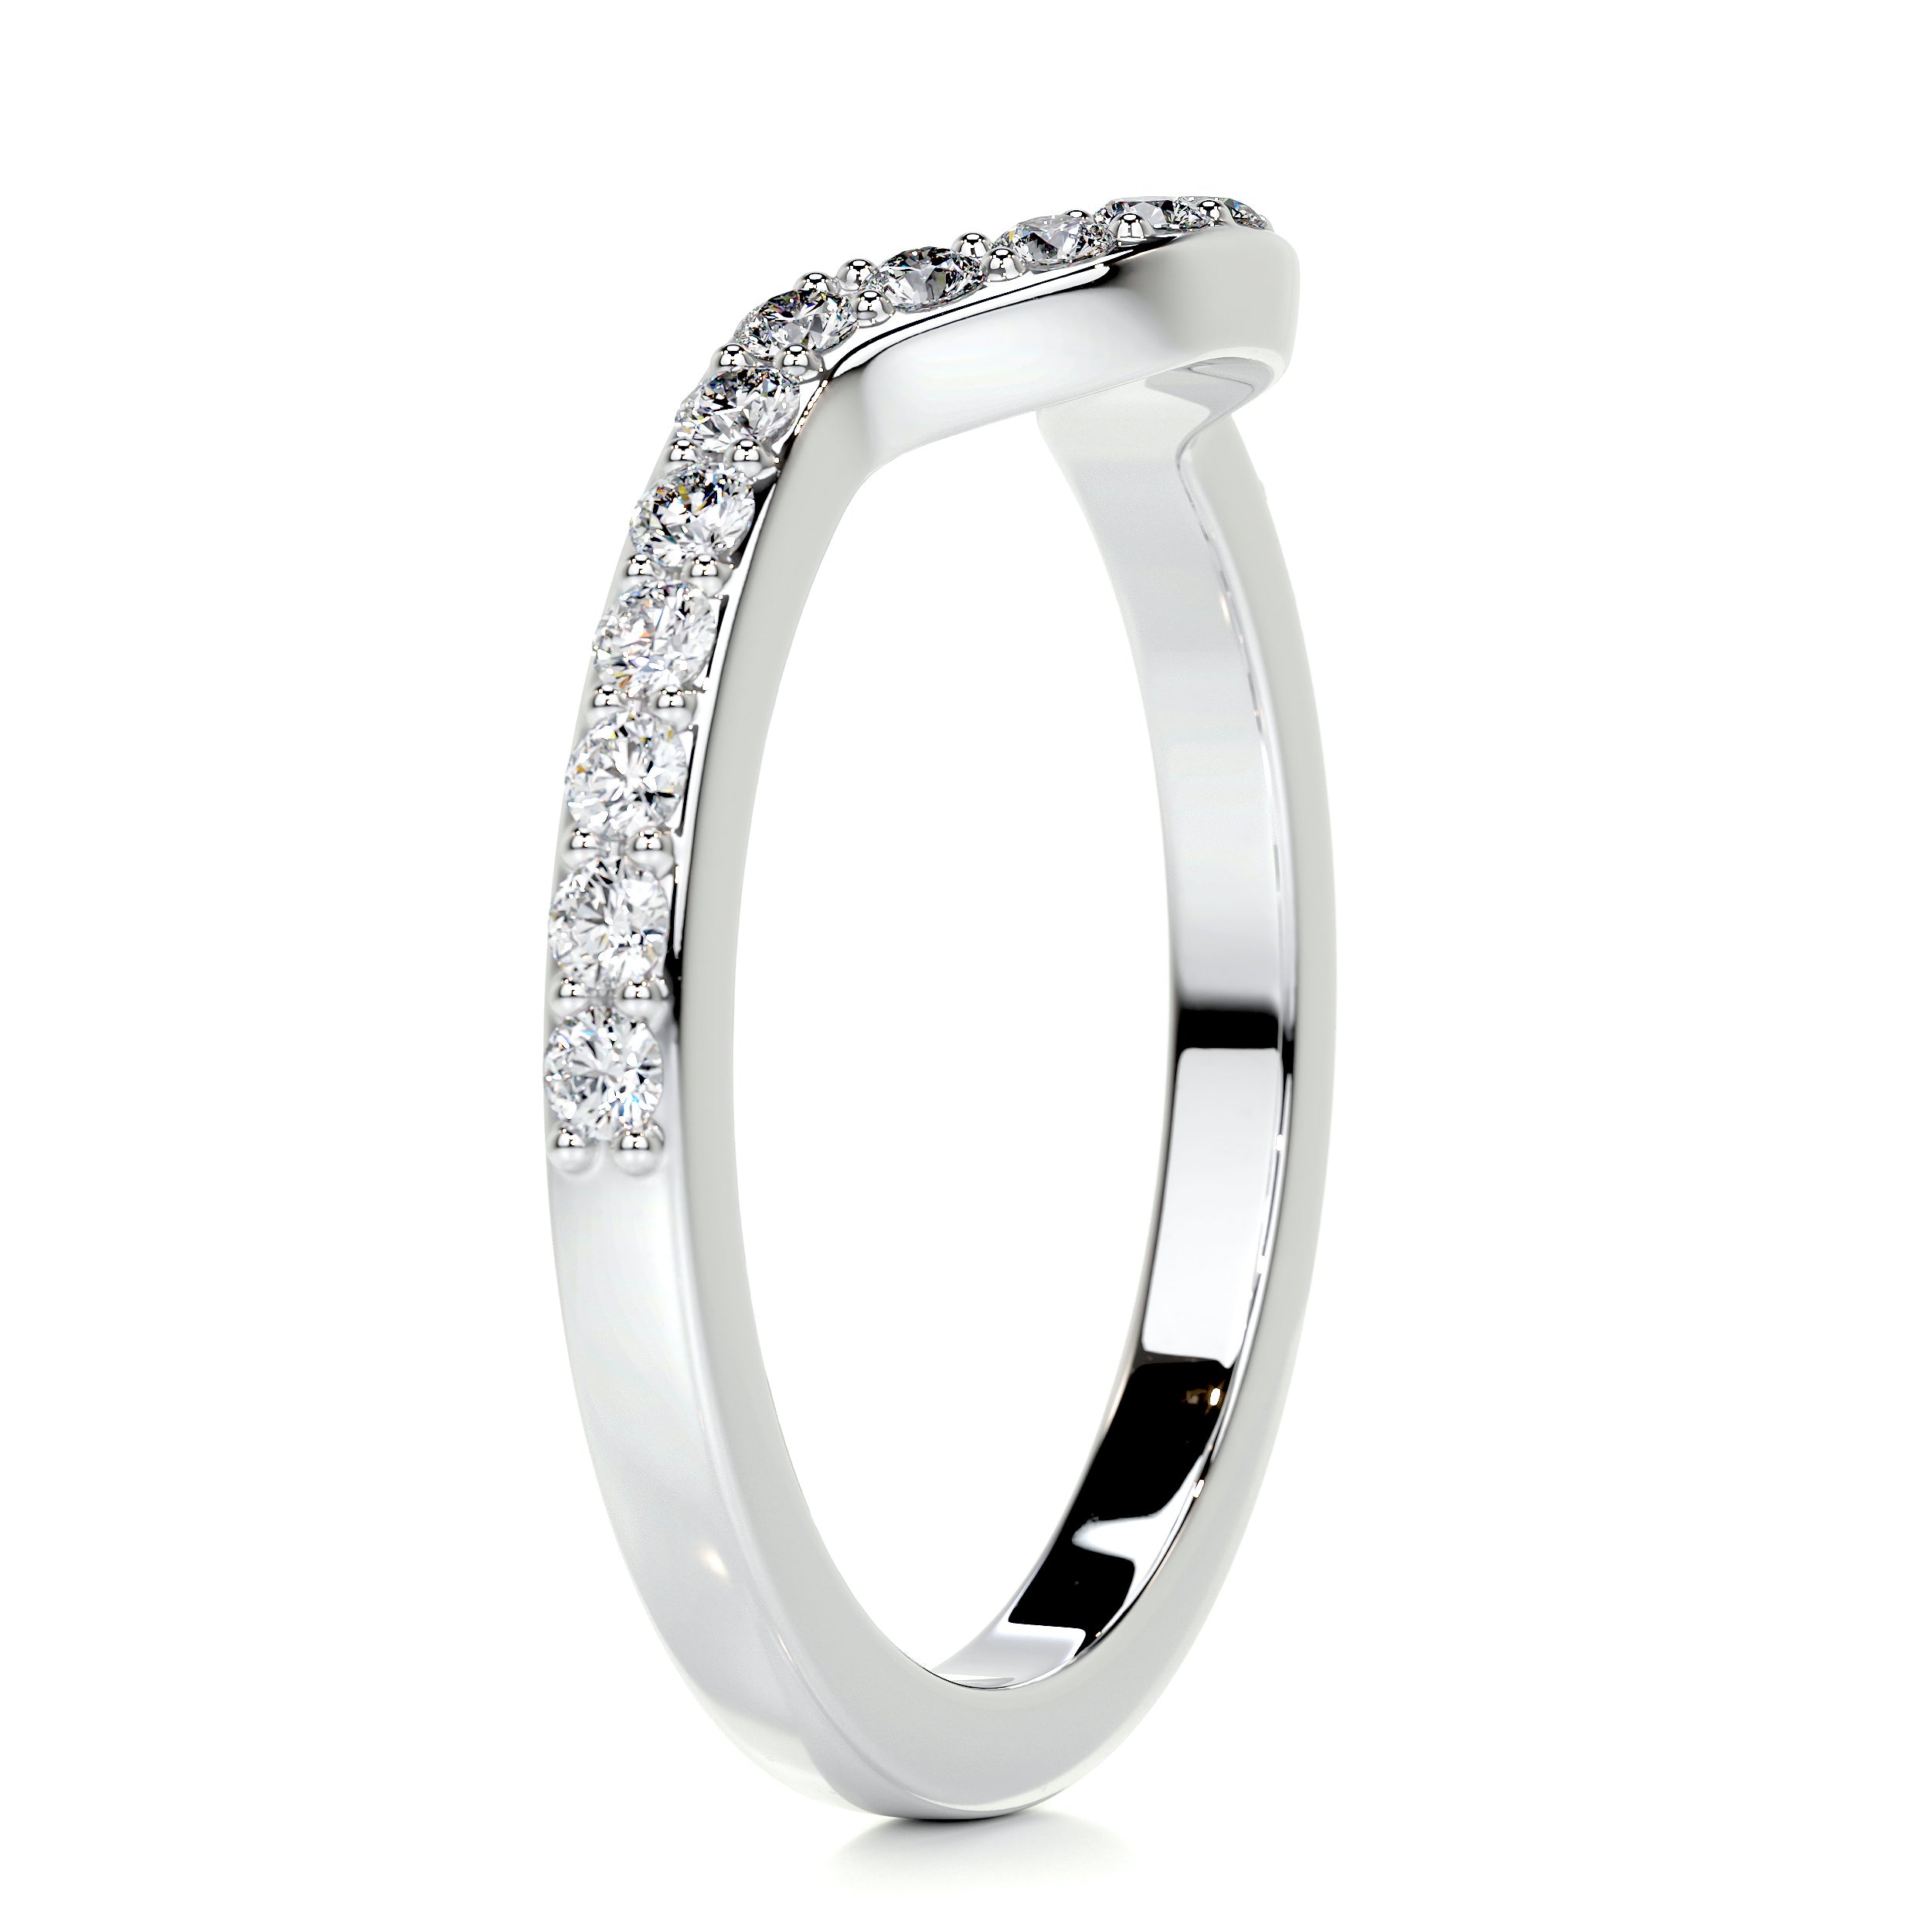 Nina Diamond Wedding Ring   (0.2 Carat) -14K White Gold